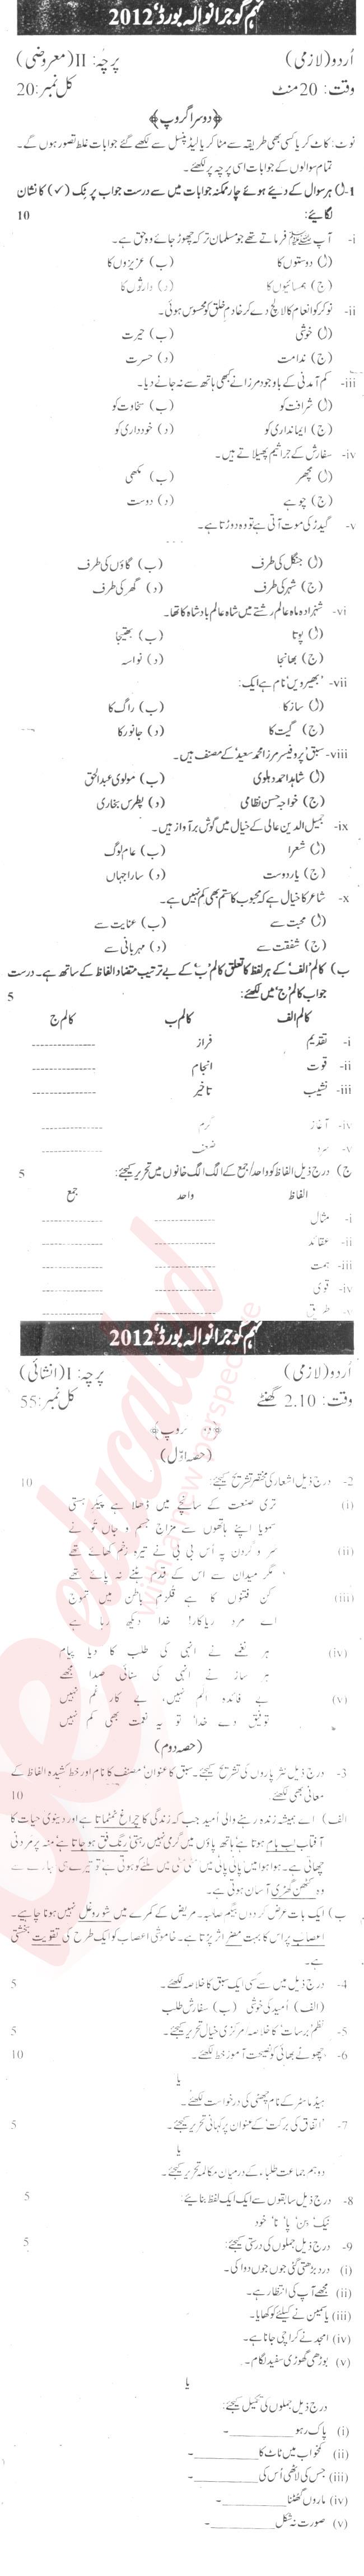 Urdu 9th Urdu Medium Past Paper Group 2 BISE Gujranwala 2012